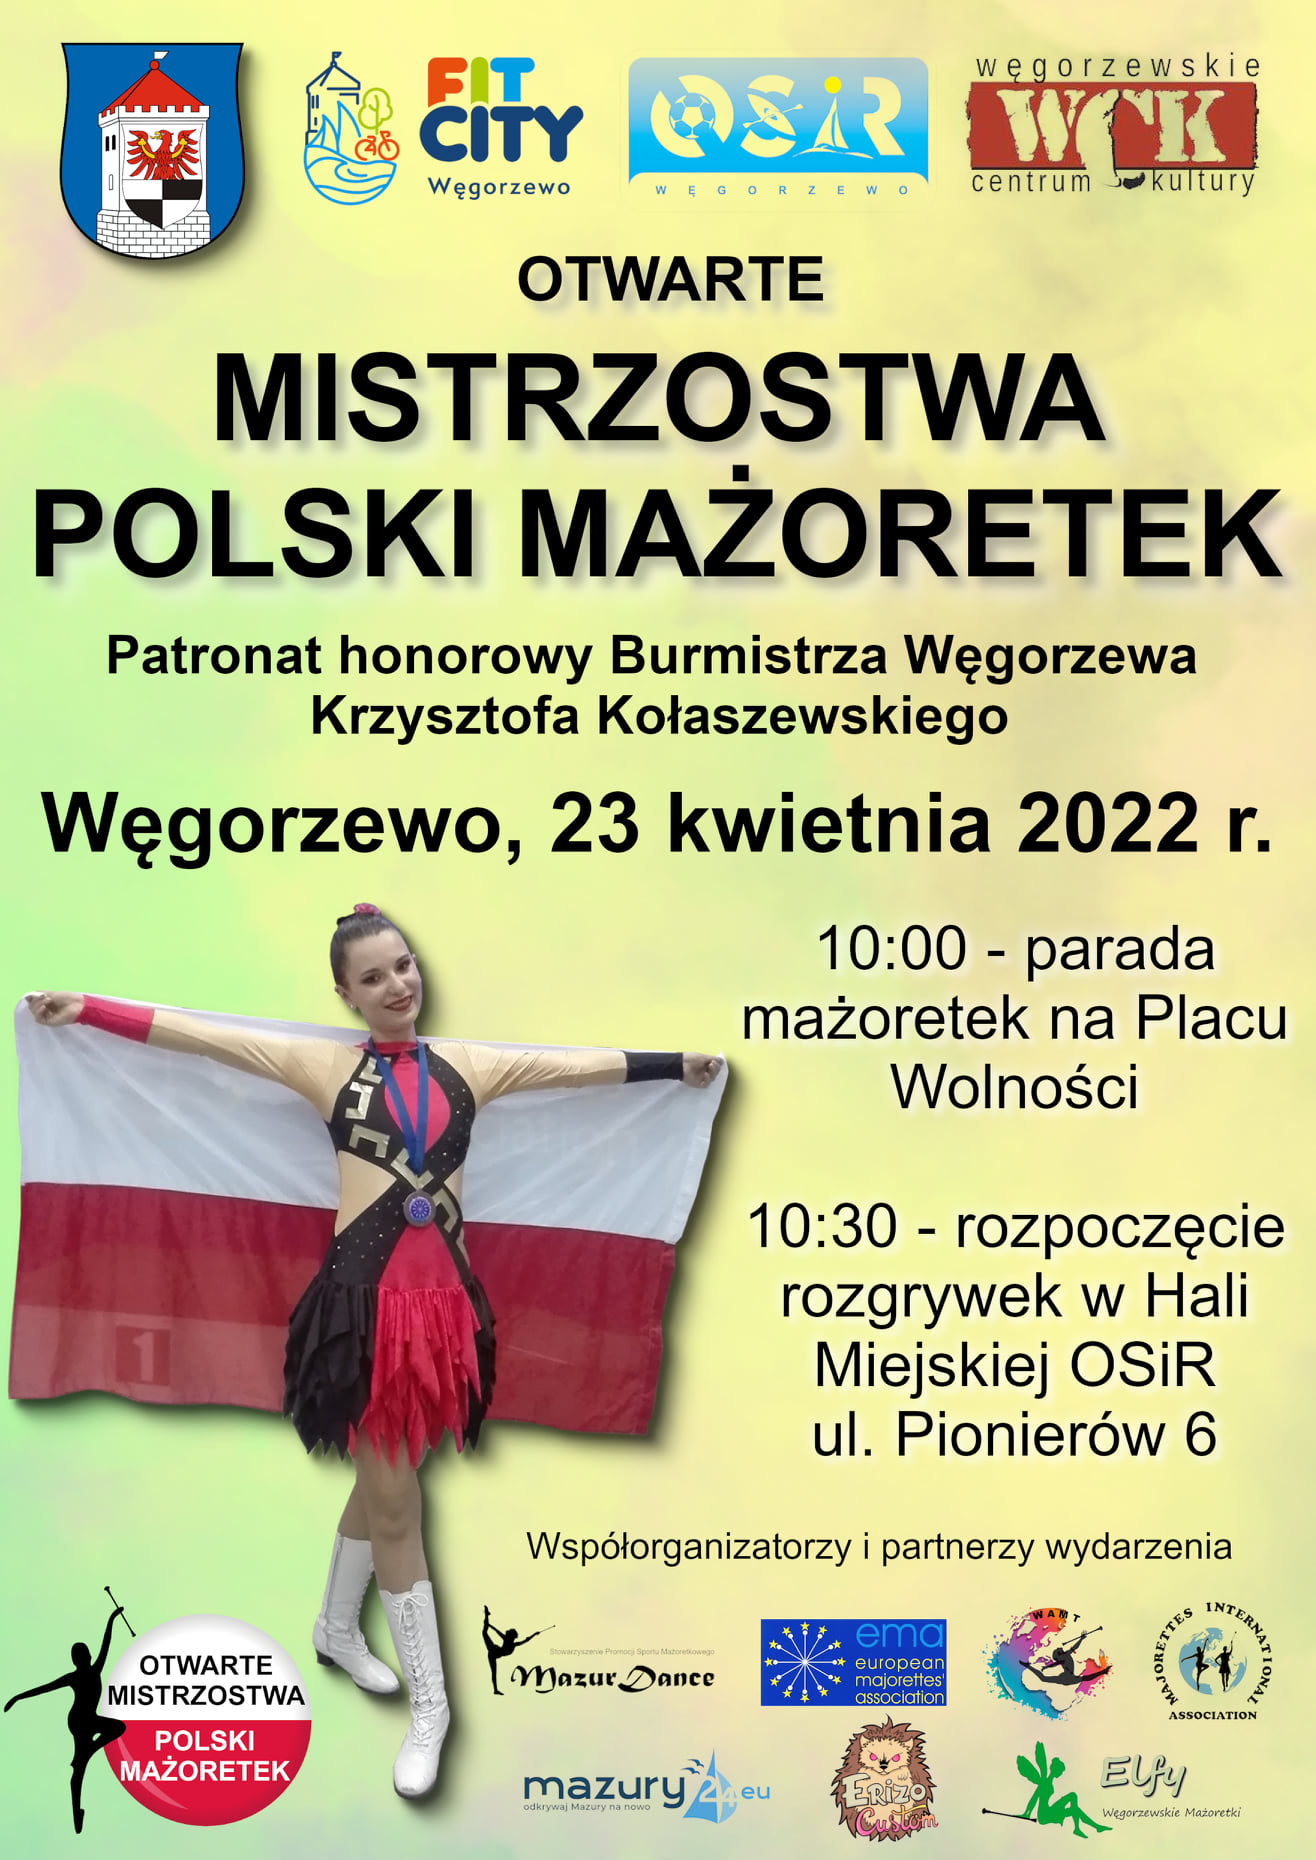 Mistrzostwa Polski Mażoretek na Mazurach